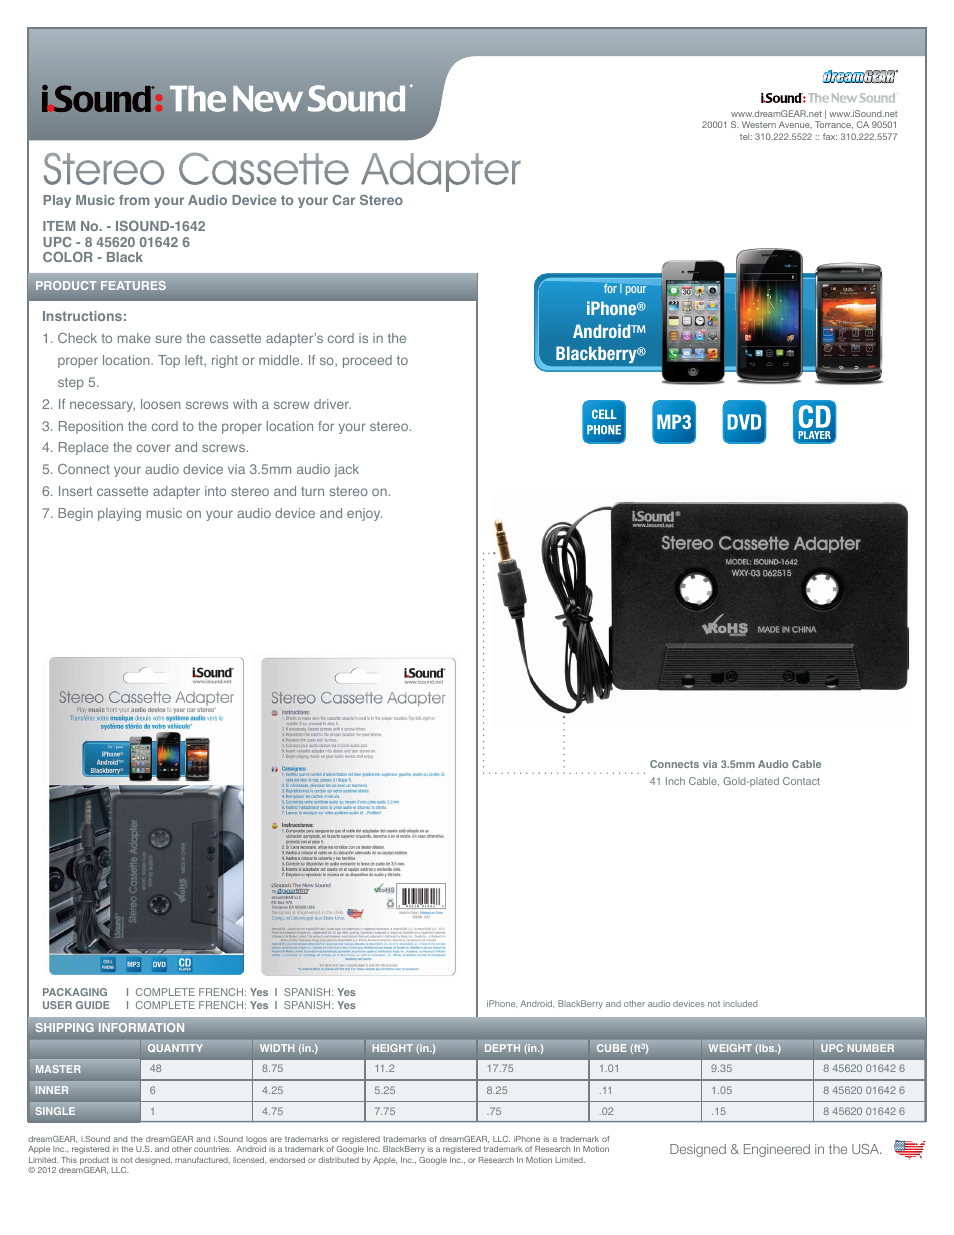 Stereo Cassette Adapter - Sell Sheet